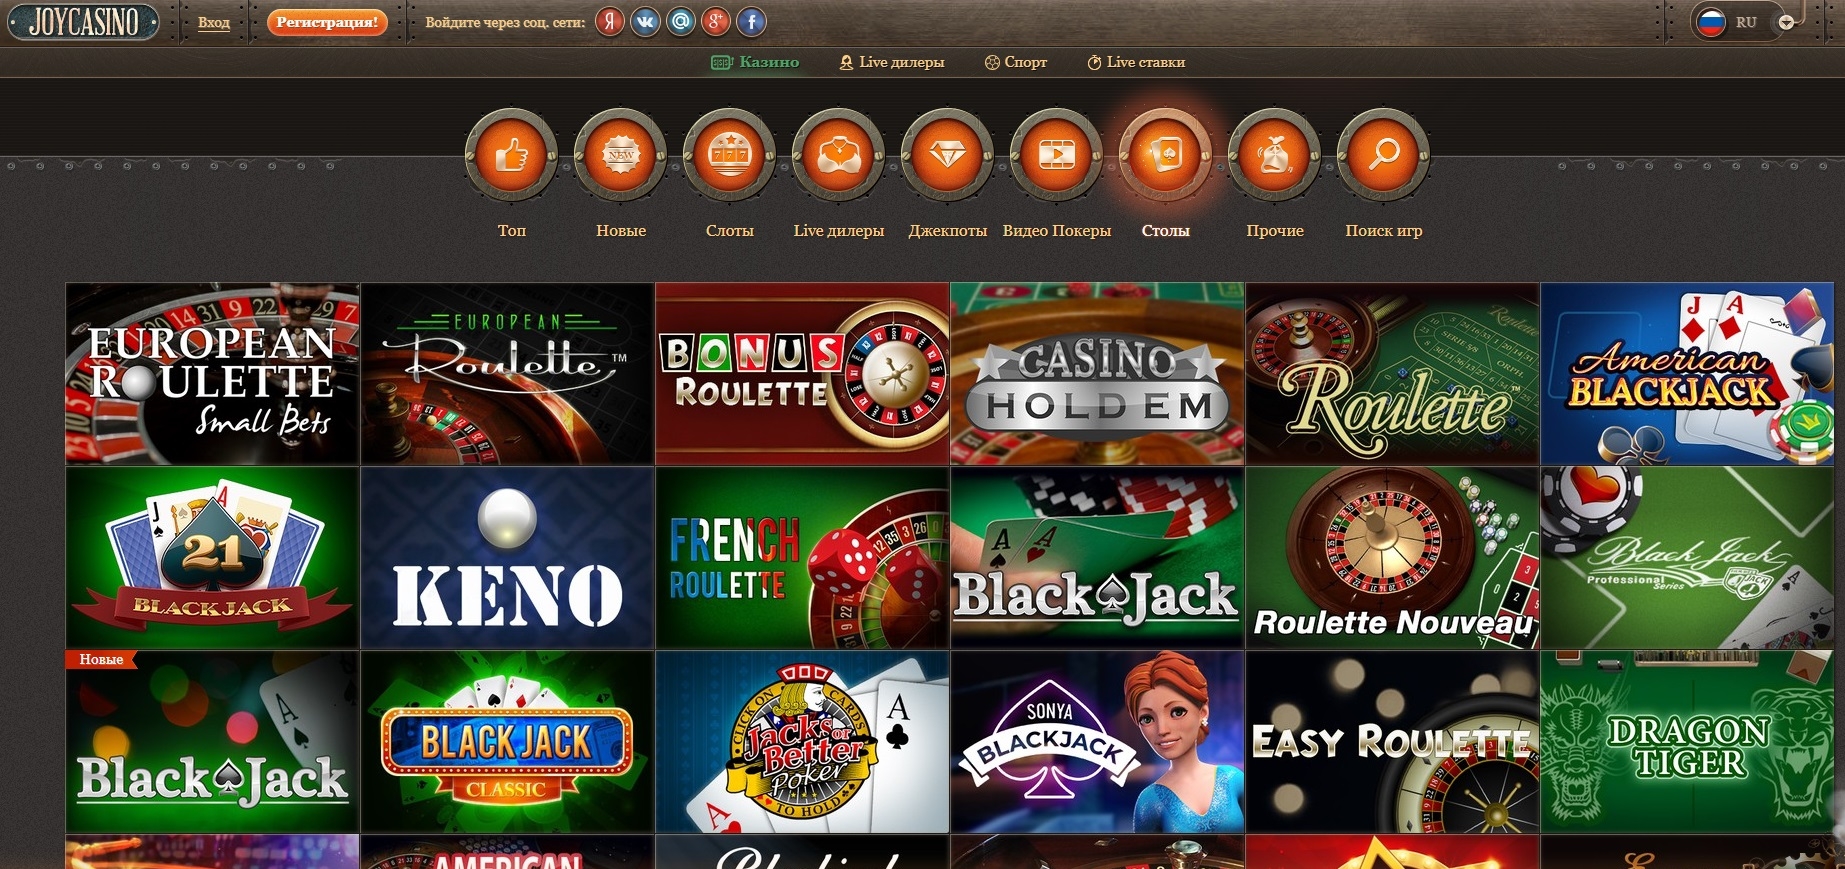 Joycasino mobile top igr онлайн игровые автоматы на деньги с первоначальным бонусом от казино